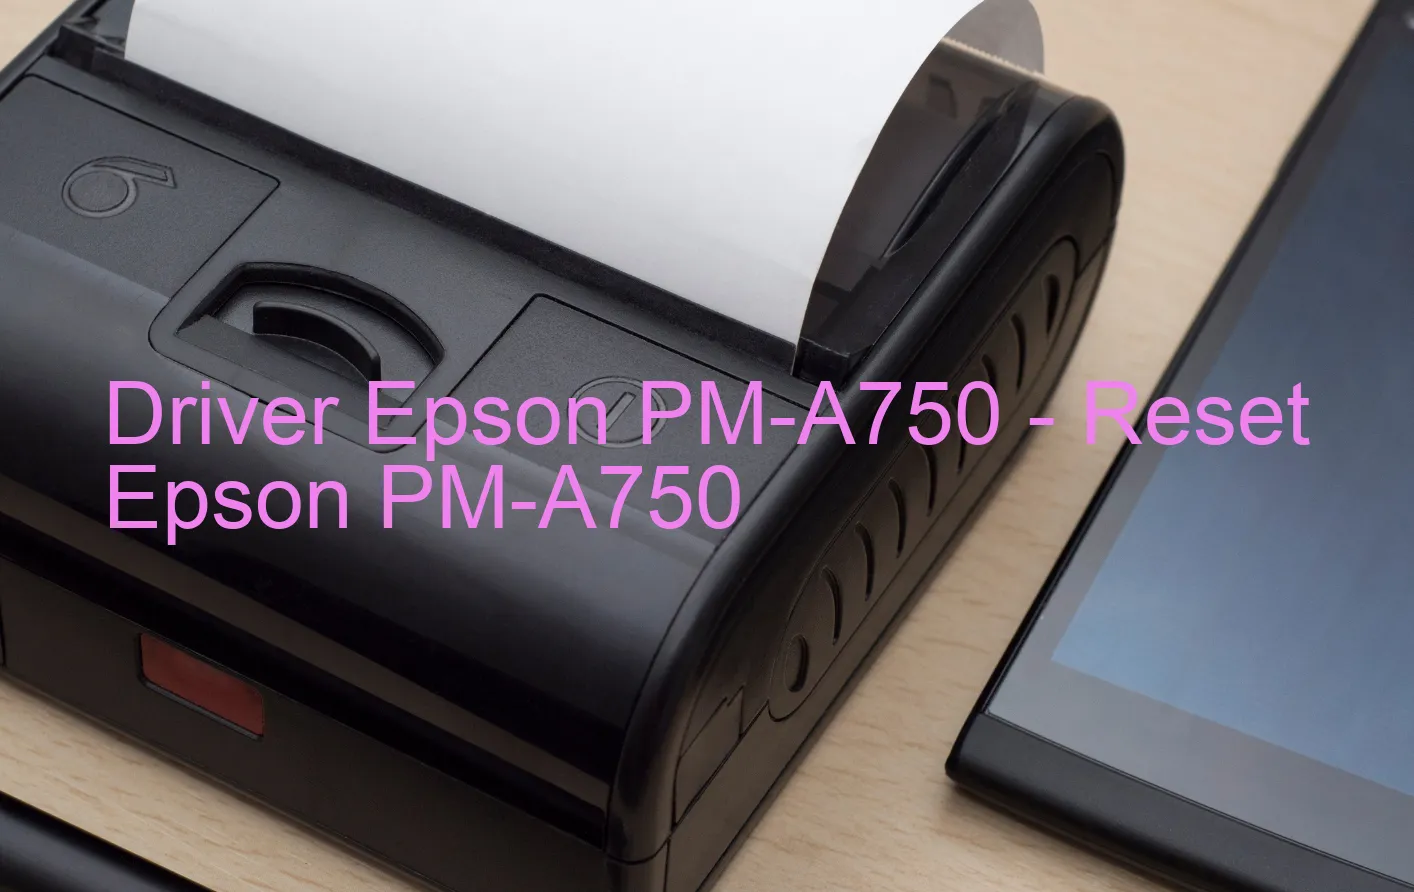 Epson PM-A750のドライバー、Epson PM-A750のリセットソフトウェア